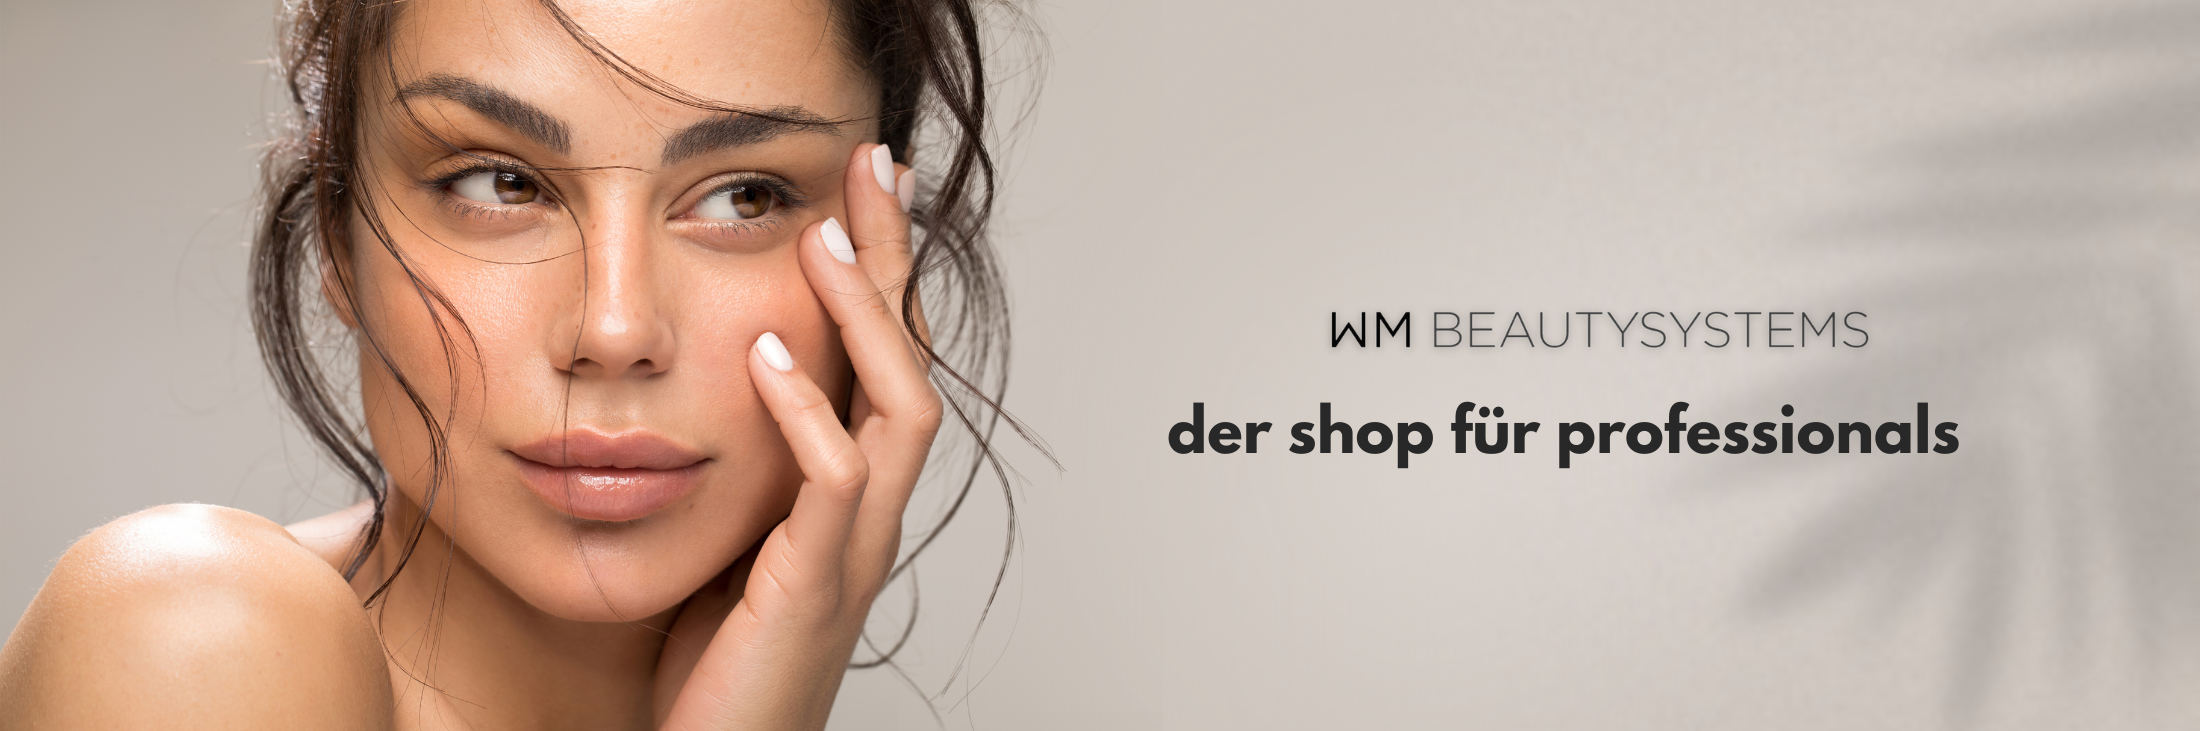 Gesichtaufnahme von dunkelhaarigem Model mit Textelement, auf dem steht: WM Beautysystems – Der Shop für Professionals